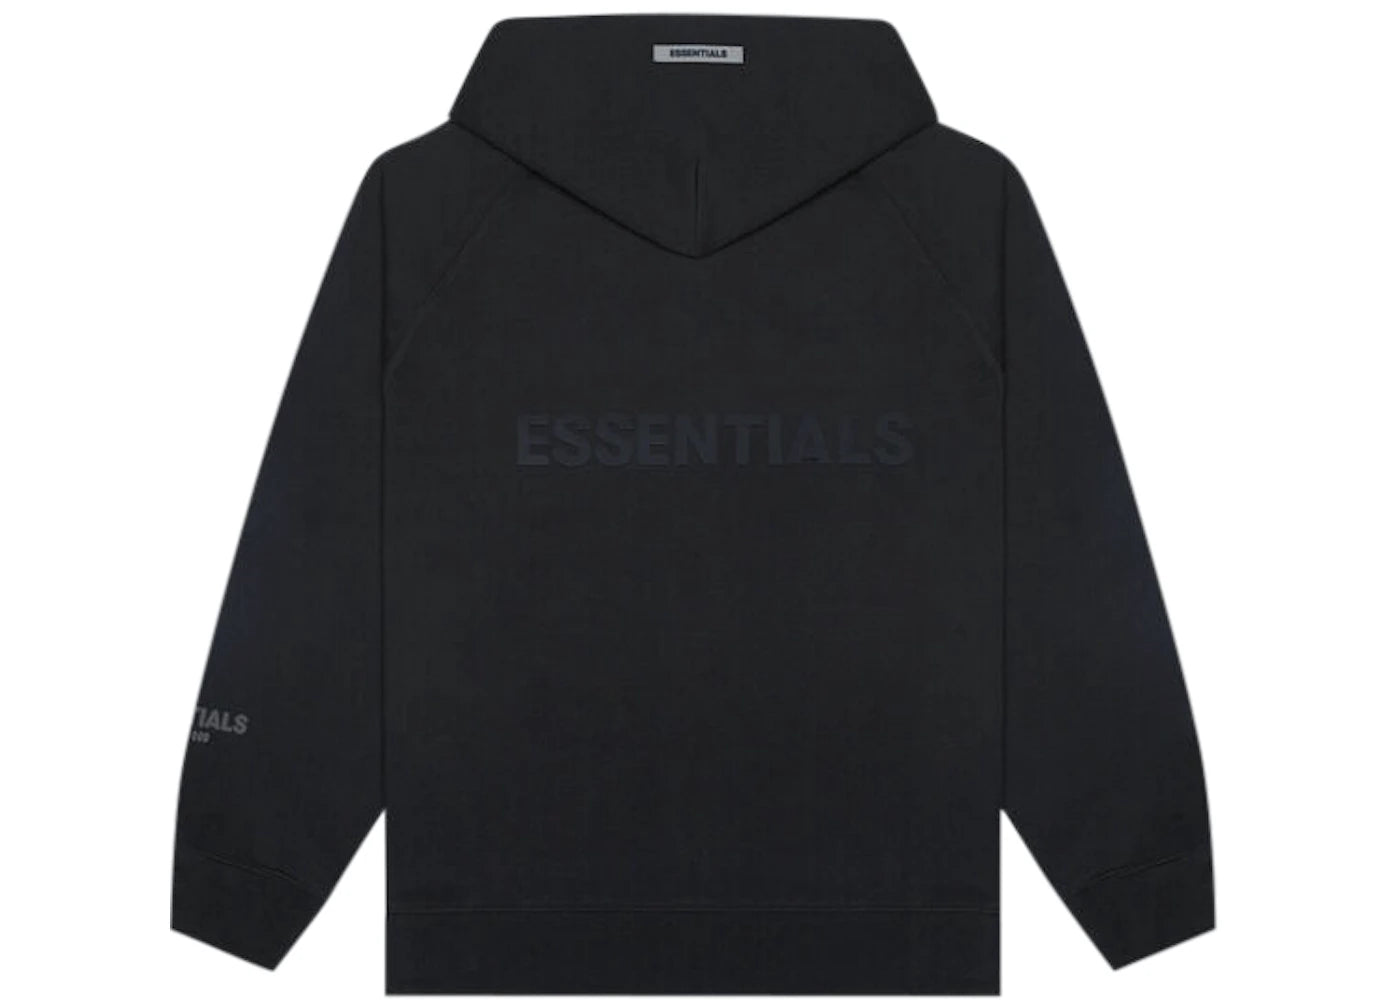 Fear of God Essentials hoodie back logo